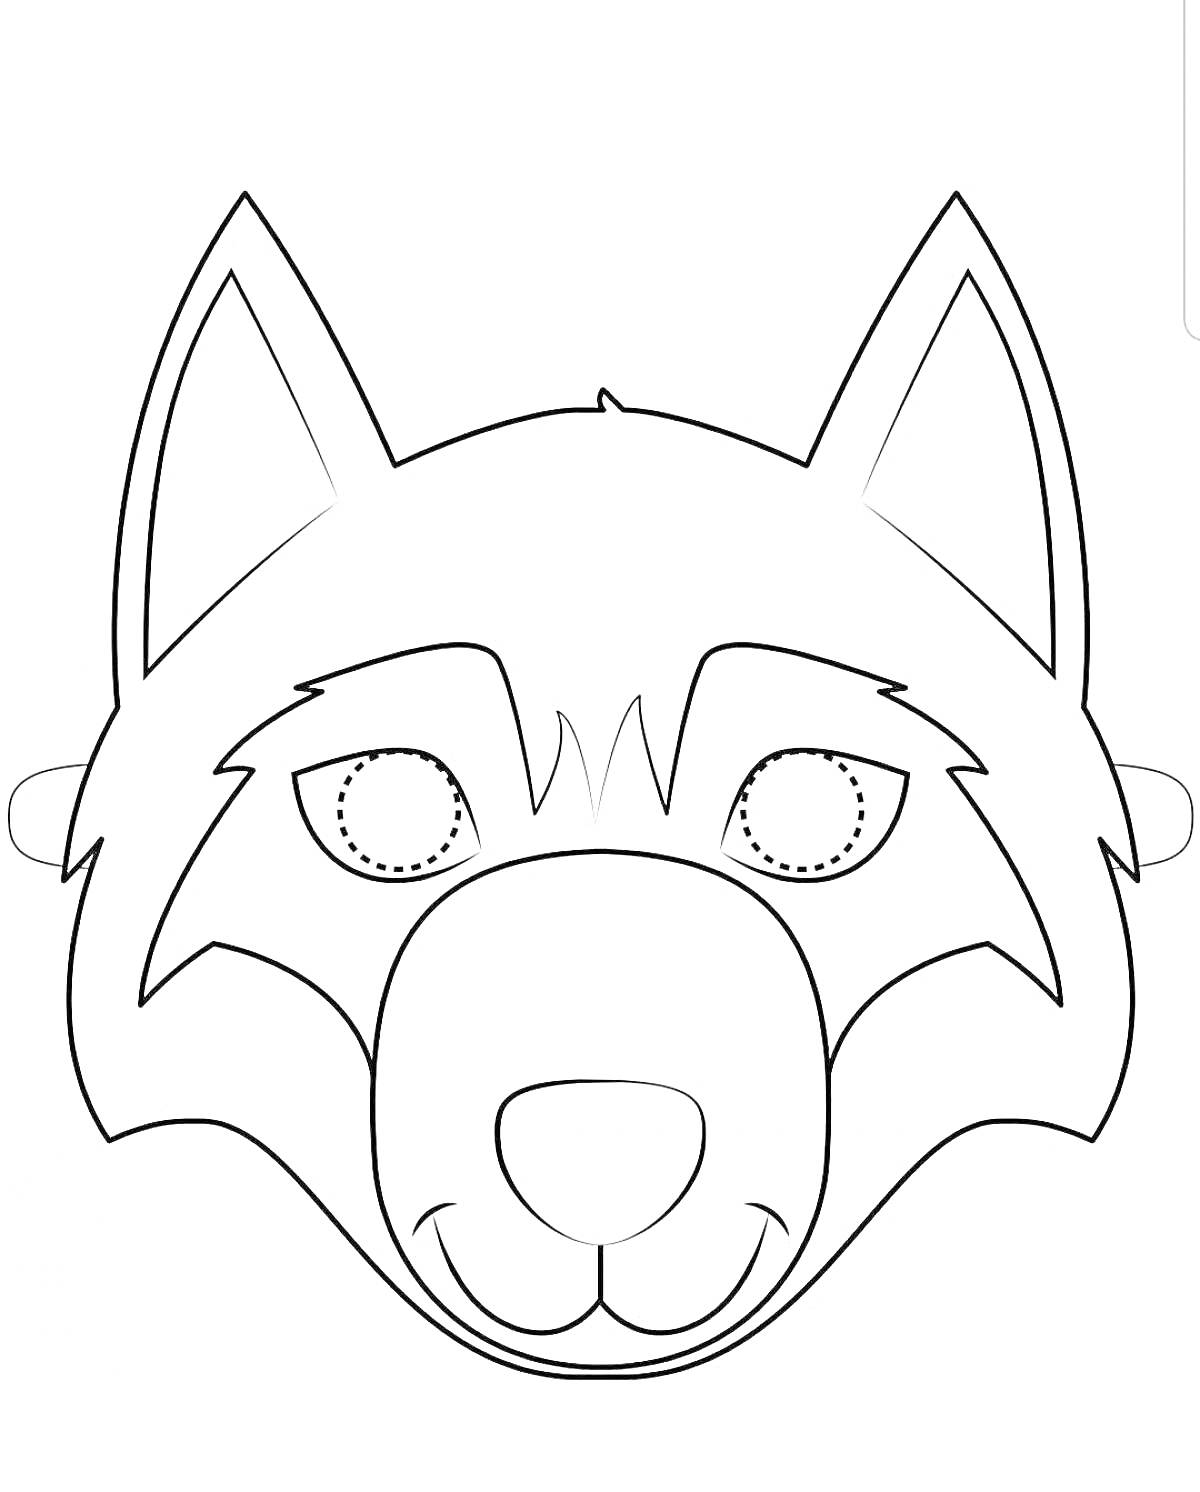 Раскраска Маска волка с прорезями для глаз и крепежными ушками